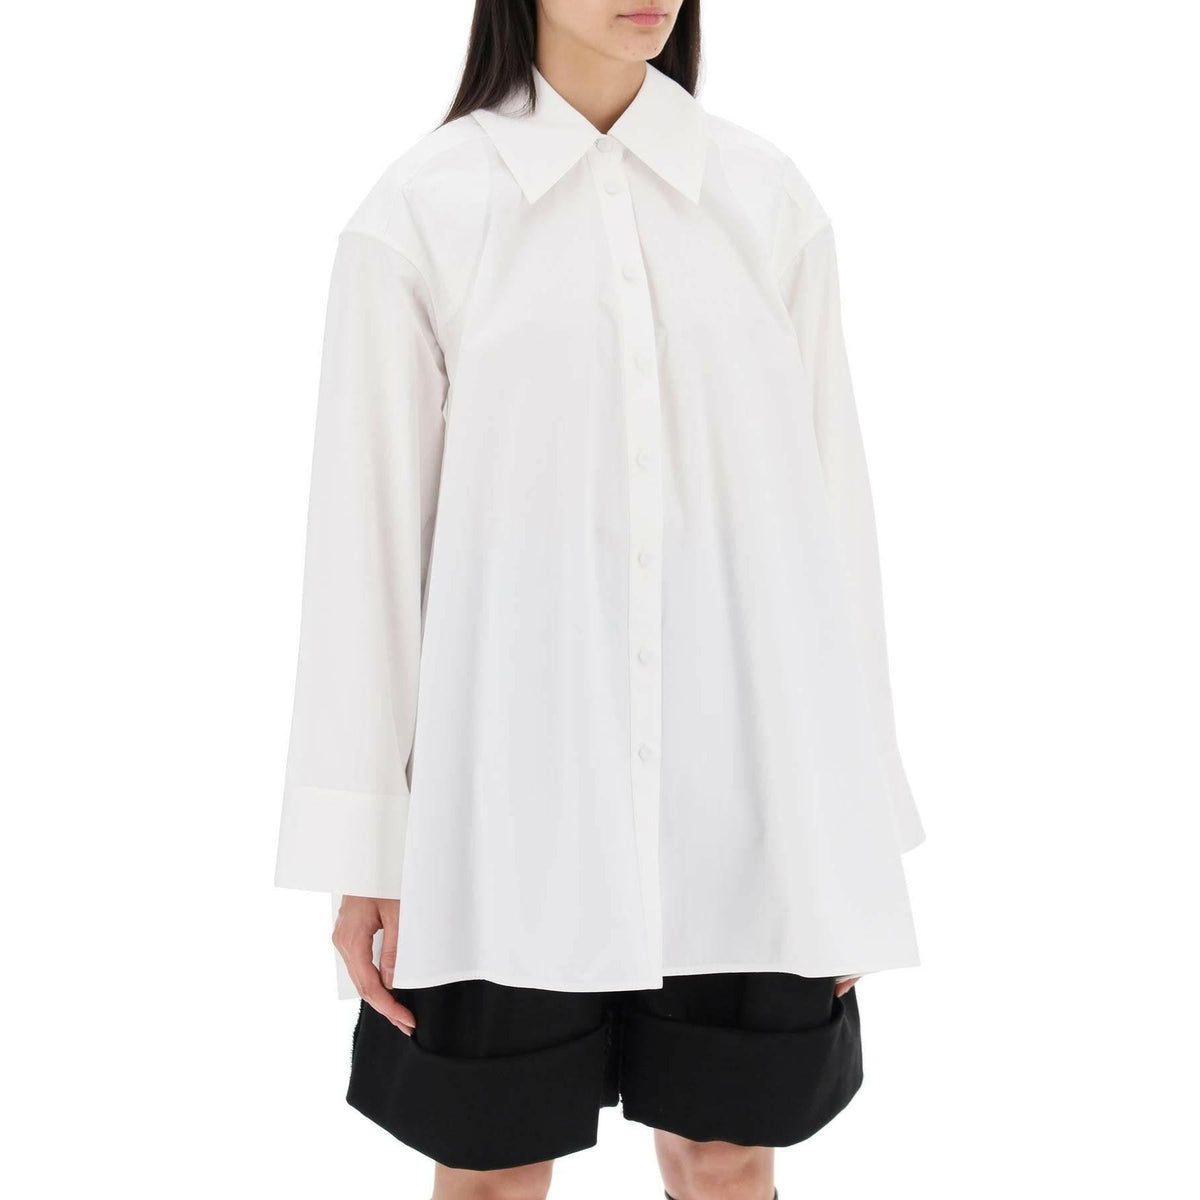 JIL SANDER - Optic White Oversized Cotton Shirt - JOHN JULIA